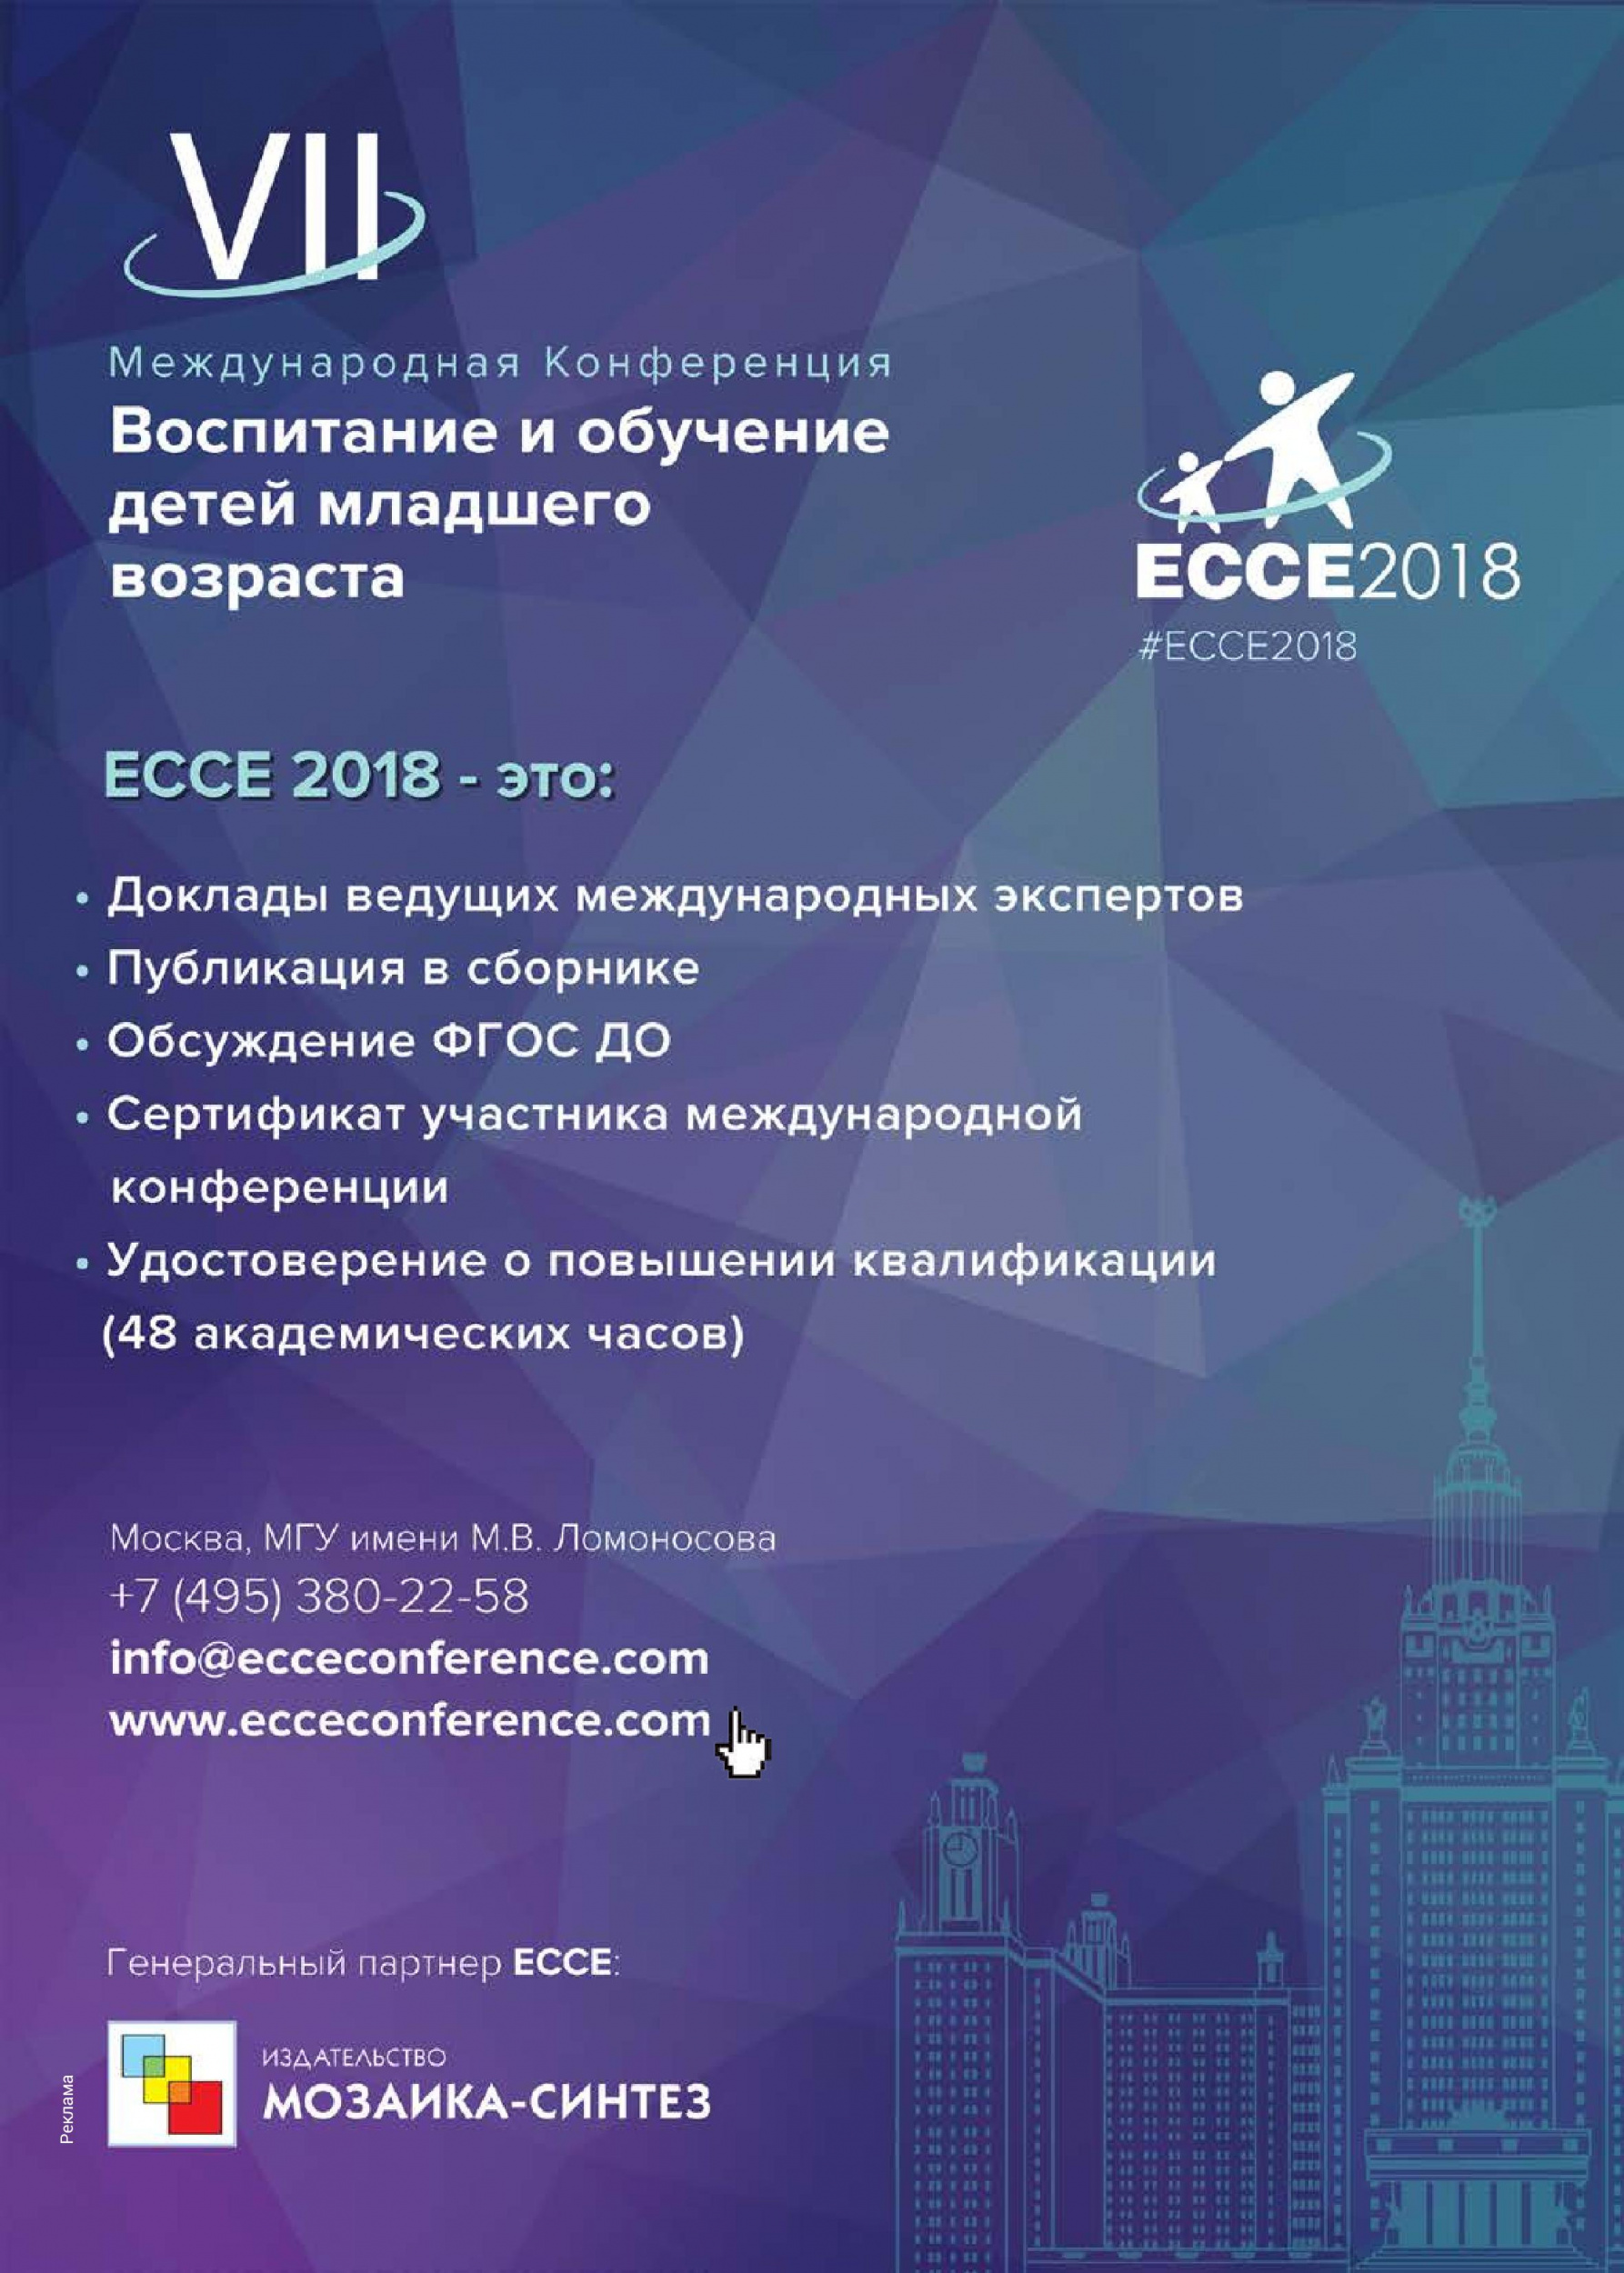 ECCE 2018